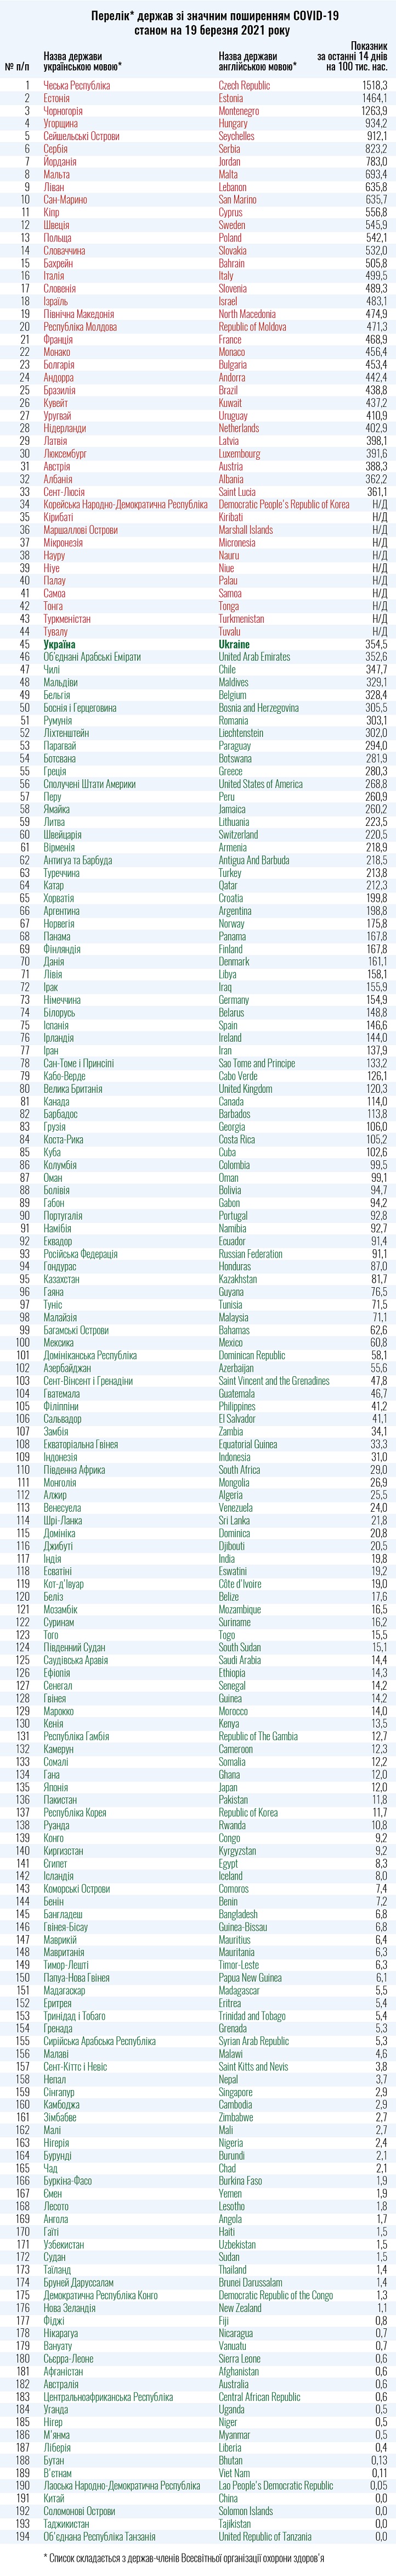 Список стран зеленой и красной зон COVID-19 по состоянию на 19 марта 2021 года